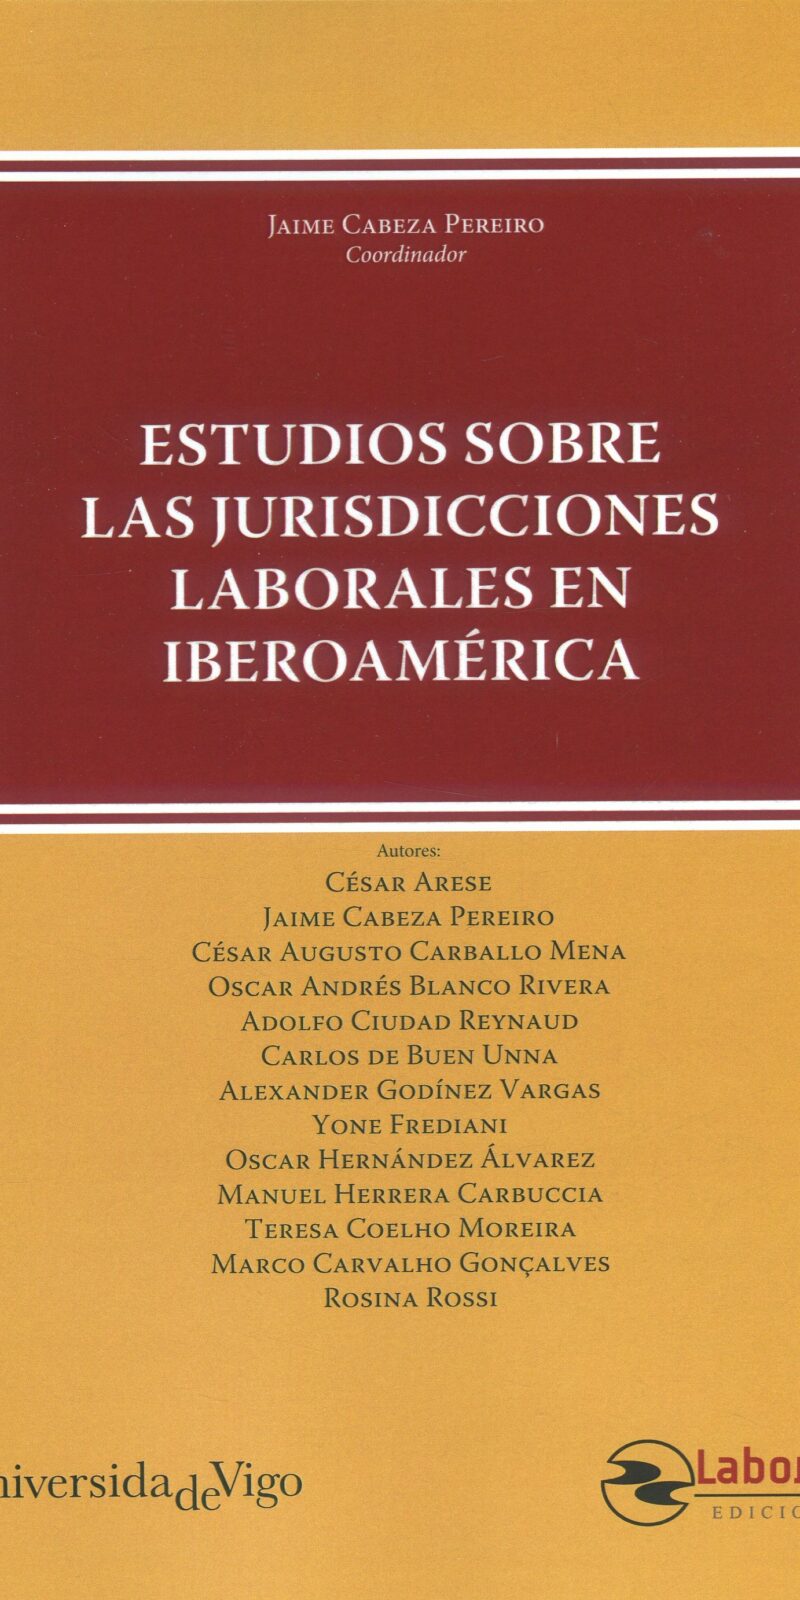 Estudios sobre las jurisdicciones laborales en Iberoamérica